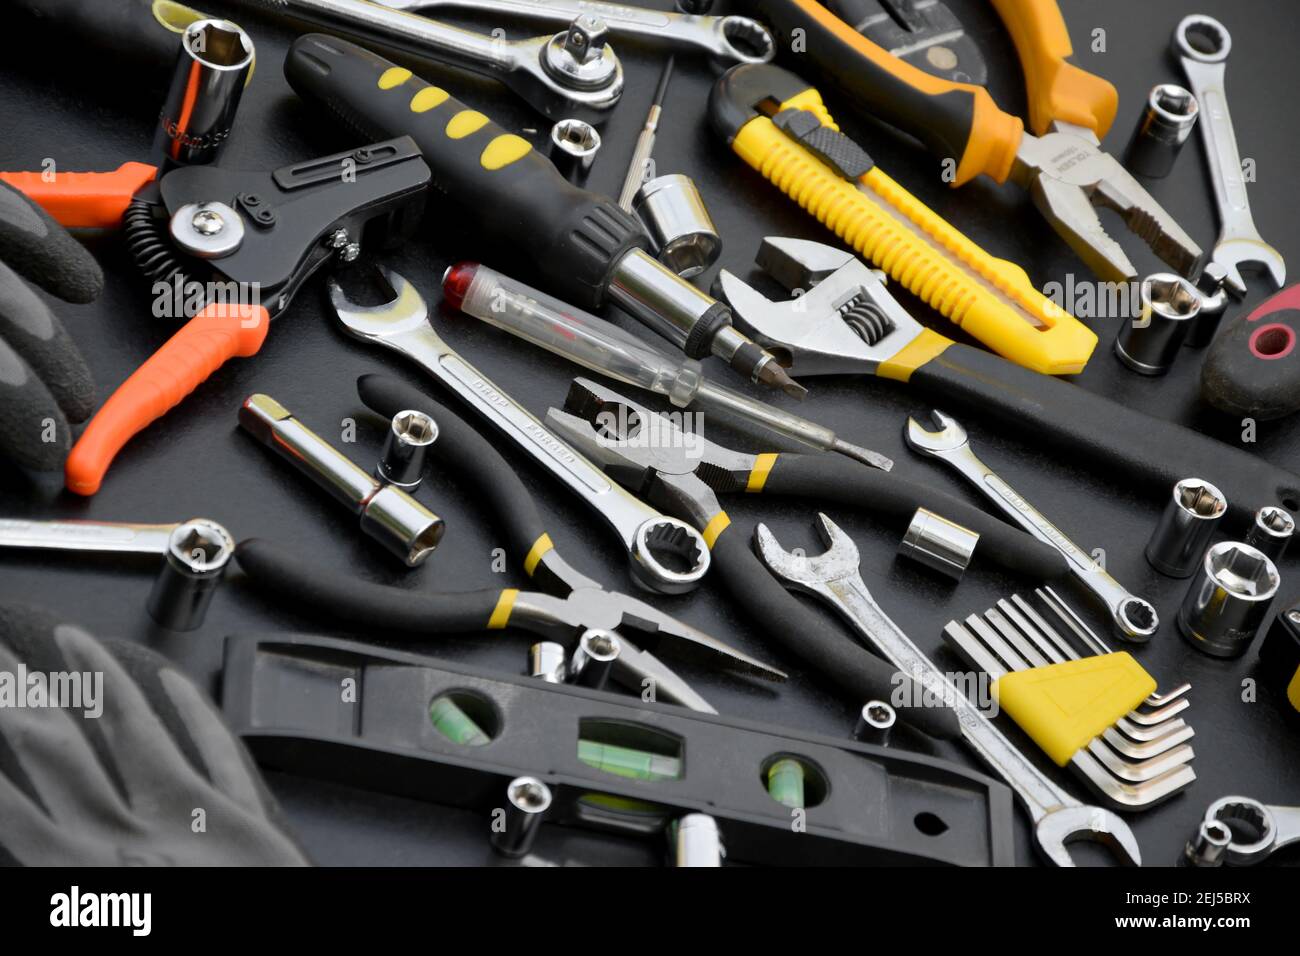 Kit d'outils pour homme à main sur table en bois noir. Beaucoup de clés et  de tournevis, pilers et autres outils pour tout type de réparation ou de  construction. Réparation Photo Stock -